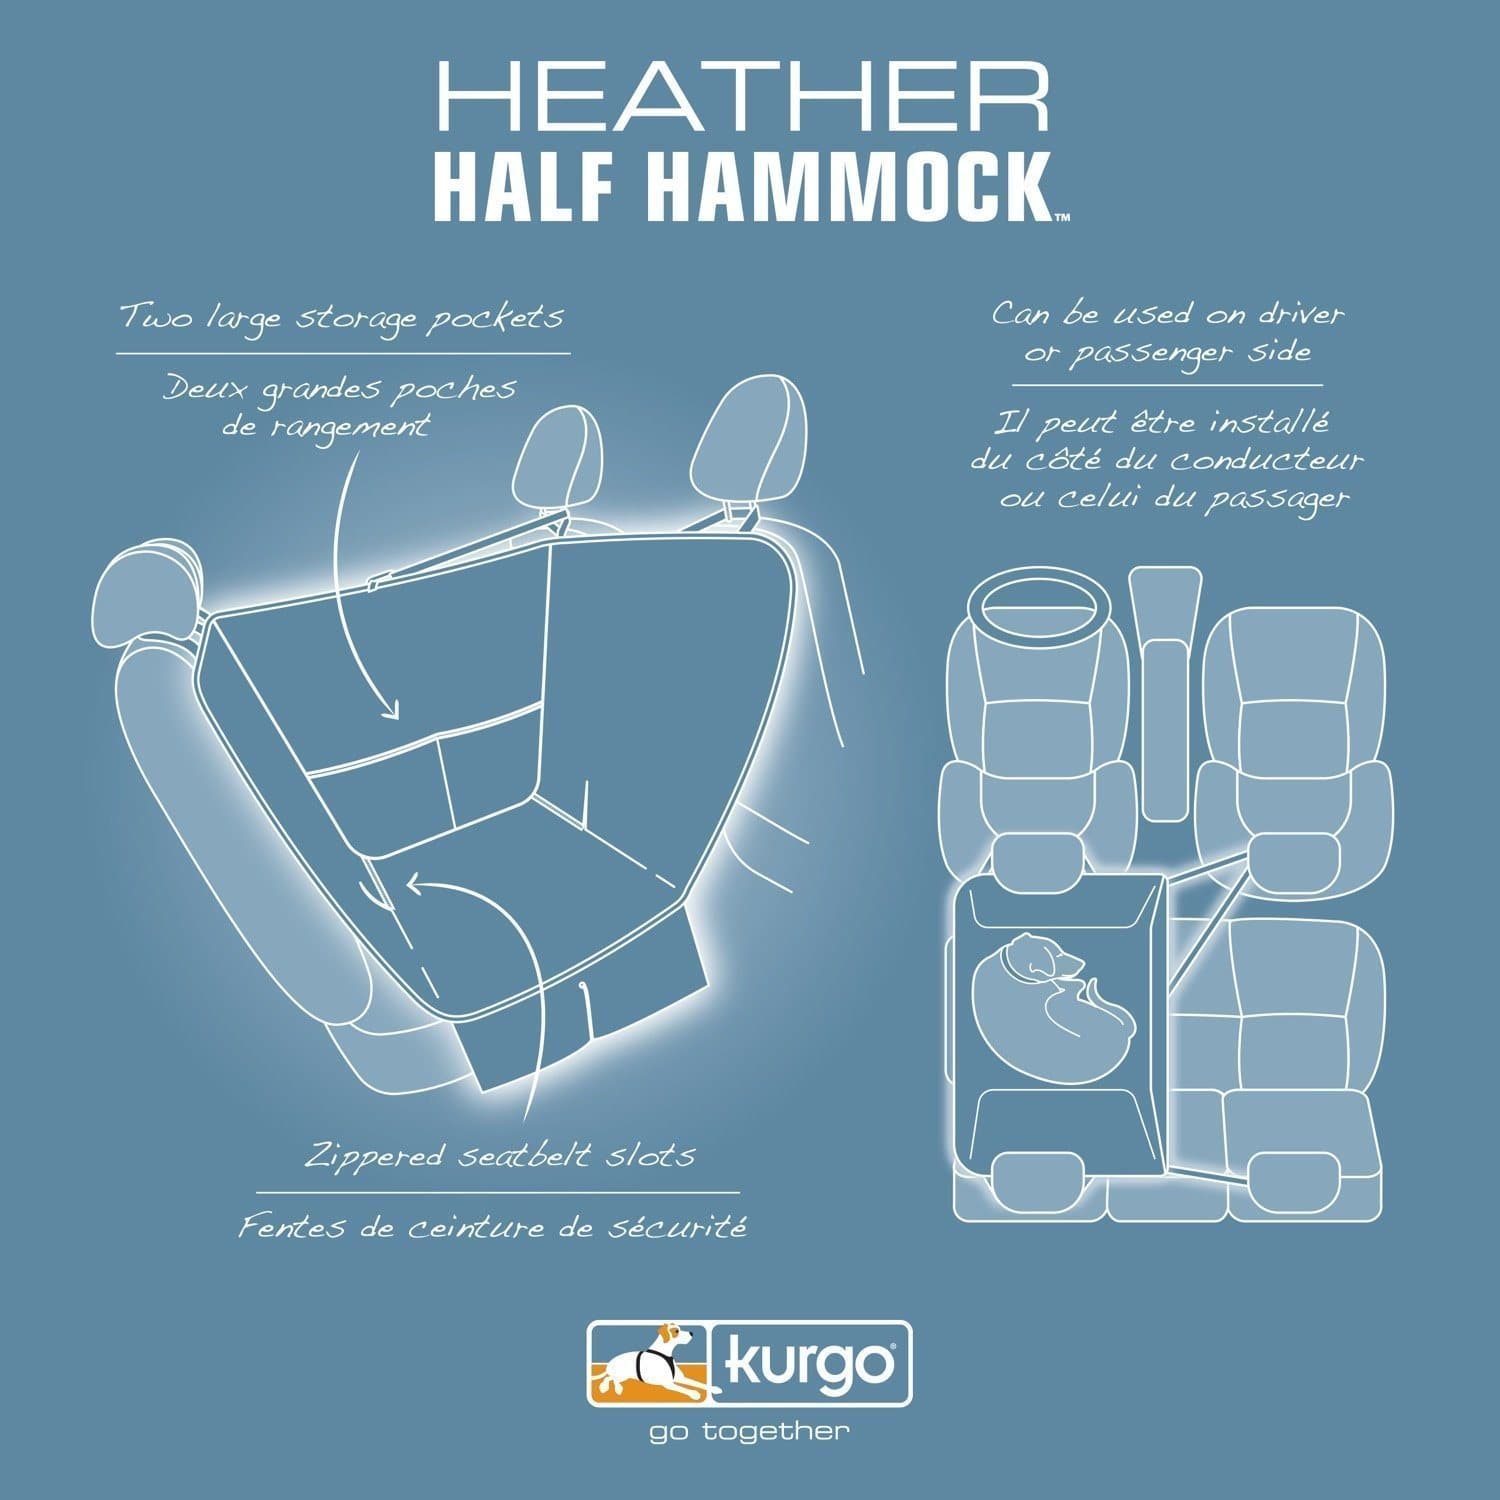 Half Hammock Heathern Azul - Media Hamaca Cubre Asientos para Perros de Kurgo®